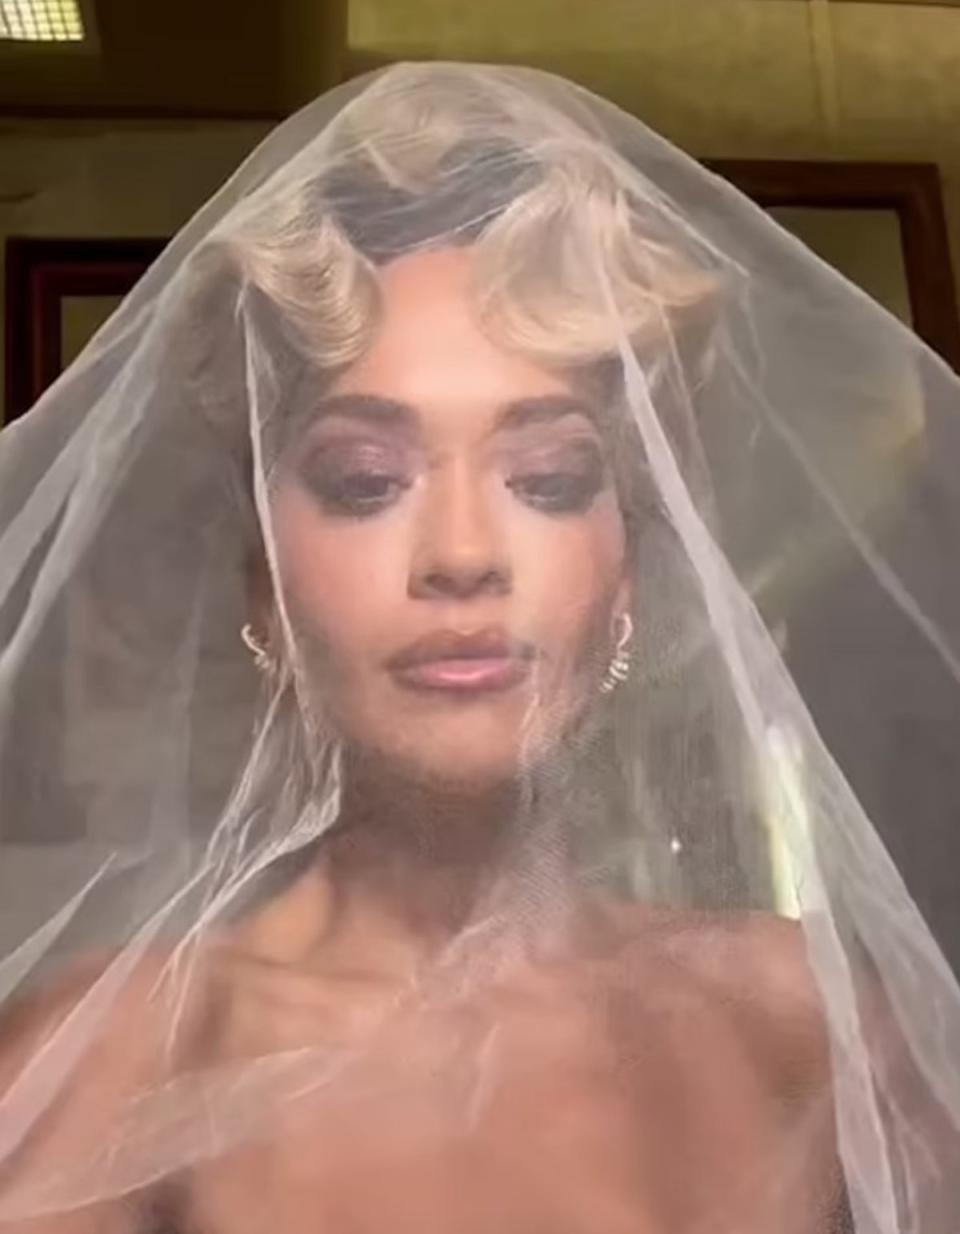 Ora revealed she wore three outfits on her wedding day (TikTok/Rita Ora)